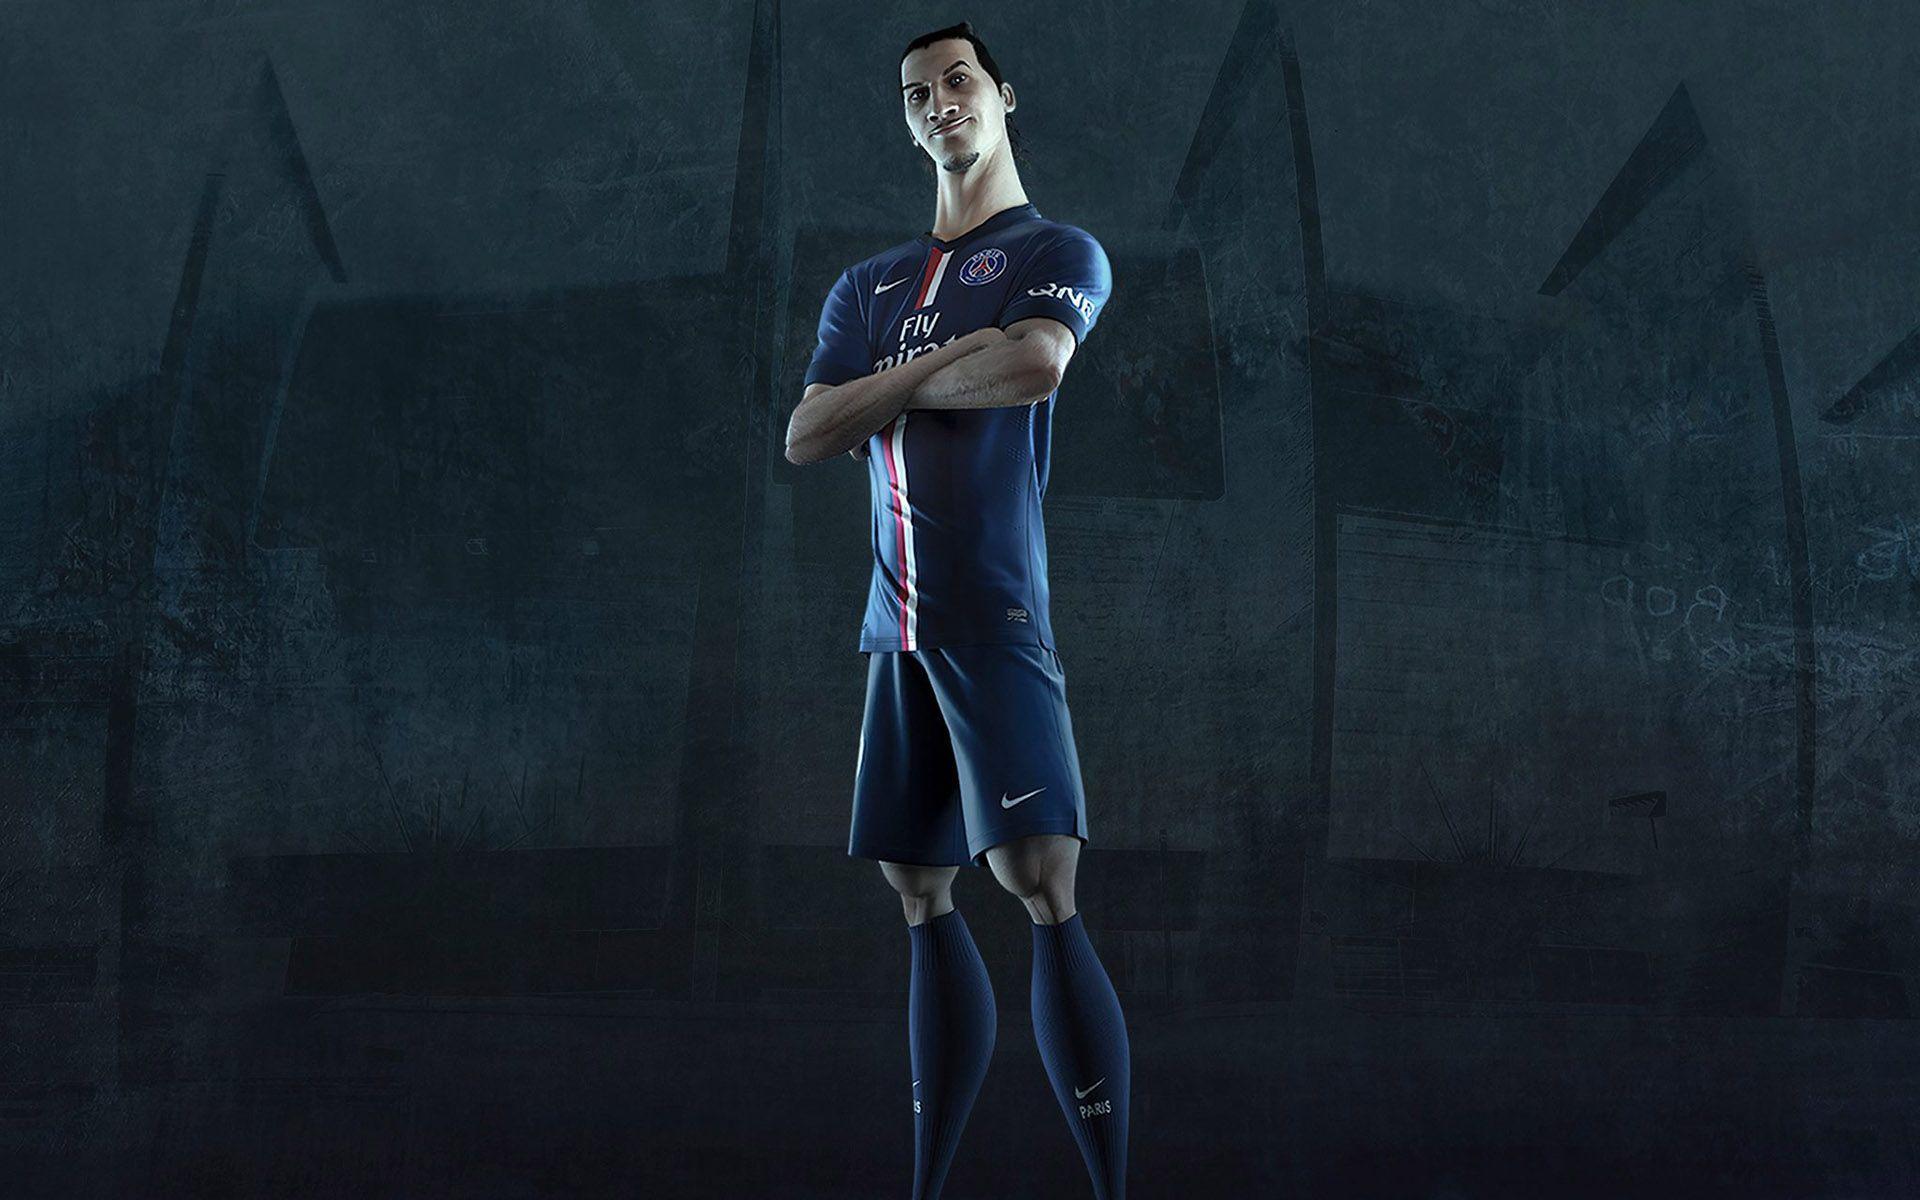 Zlatan Ibrahimovic PSG Jersey 2014 2015 Home Kit Wallpaper Free